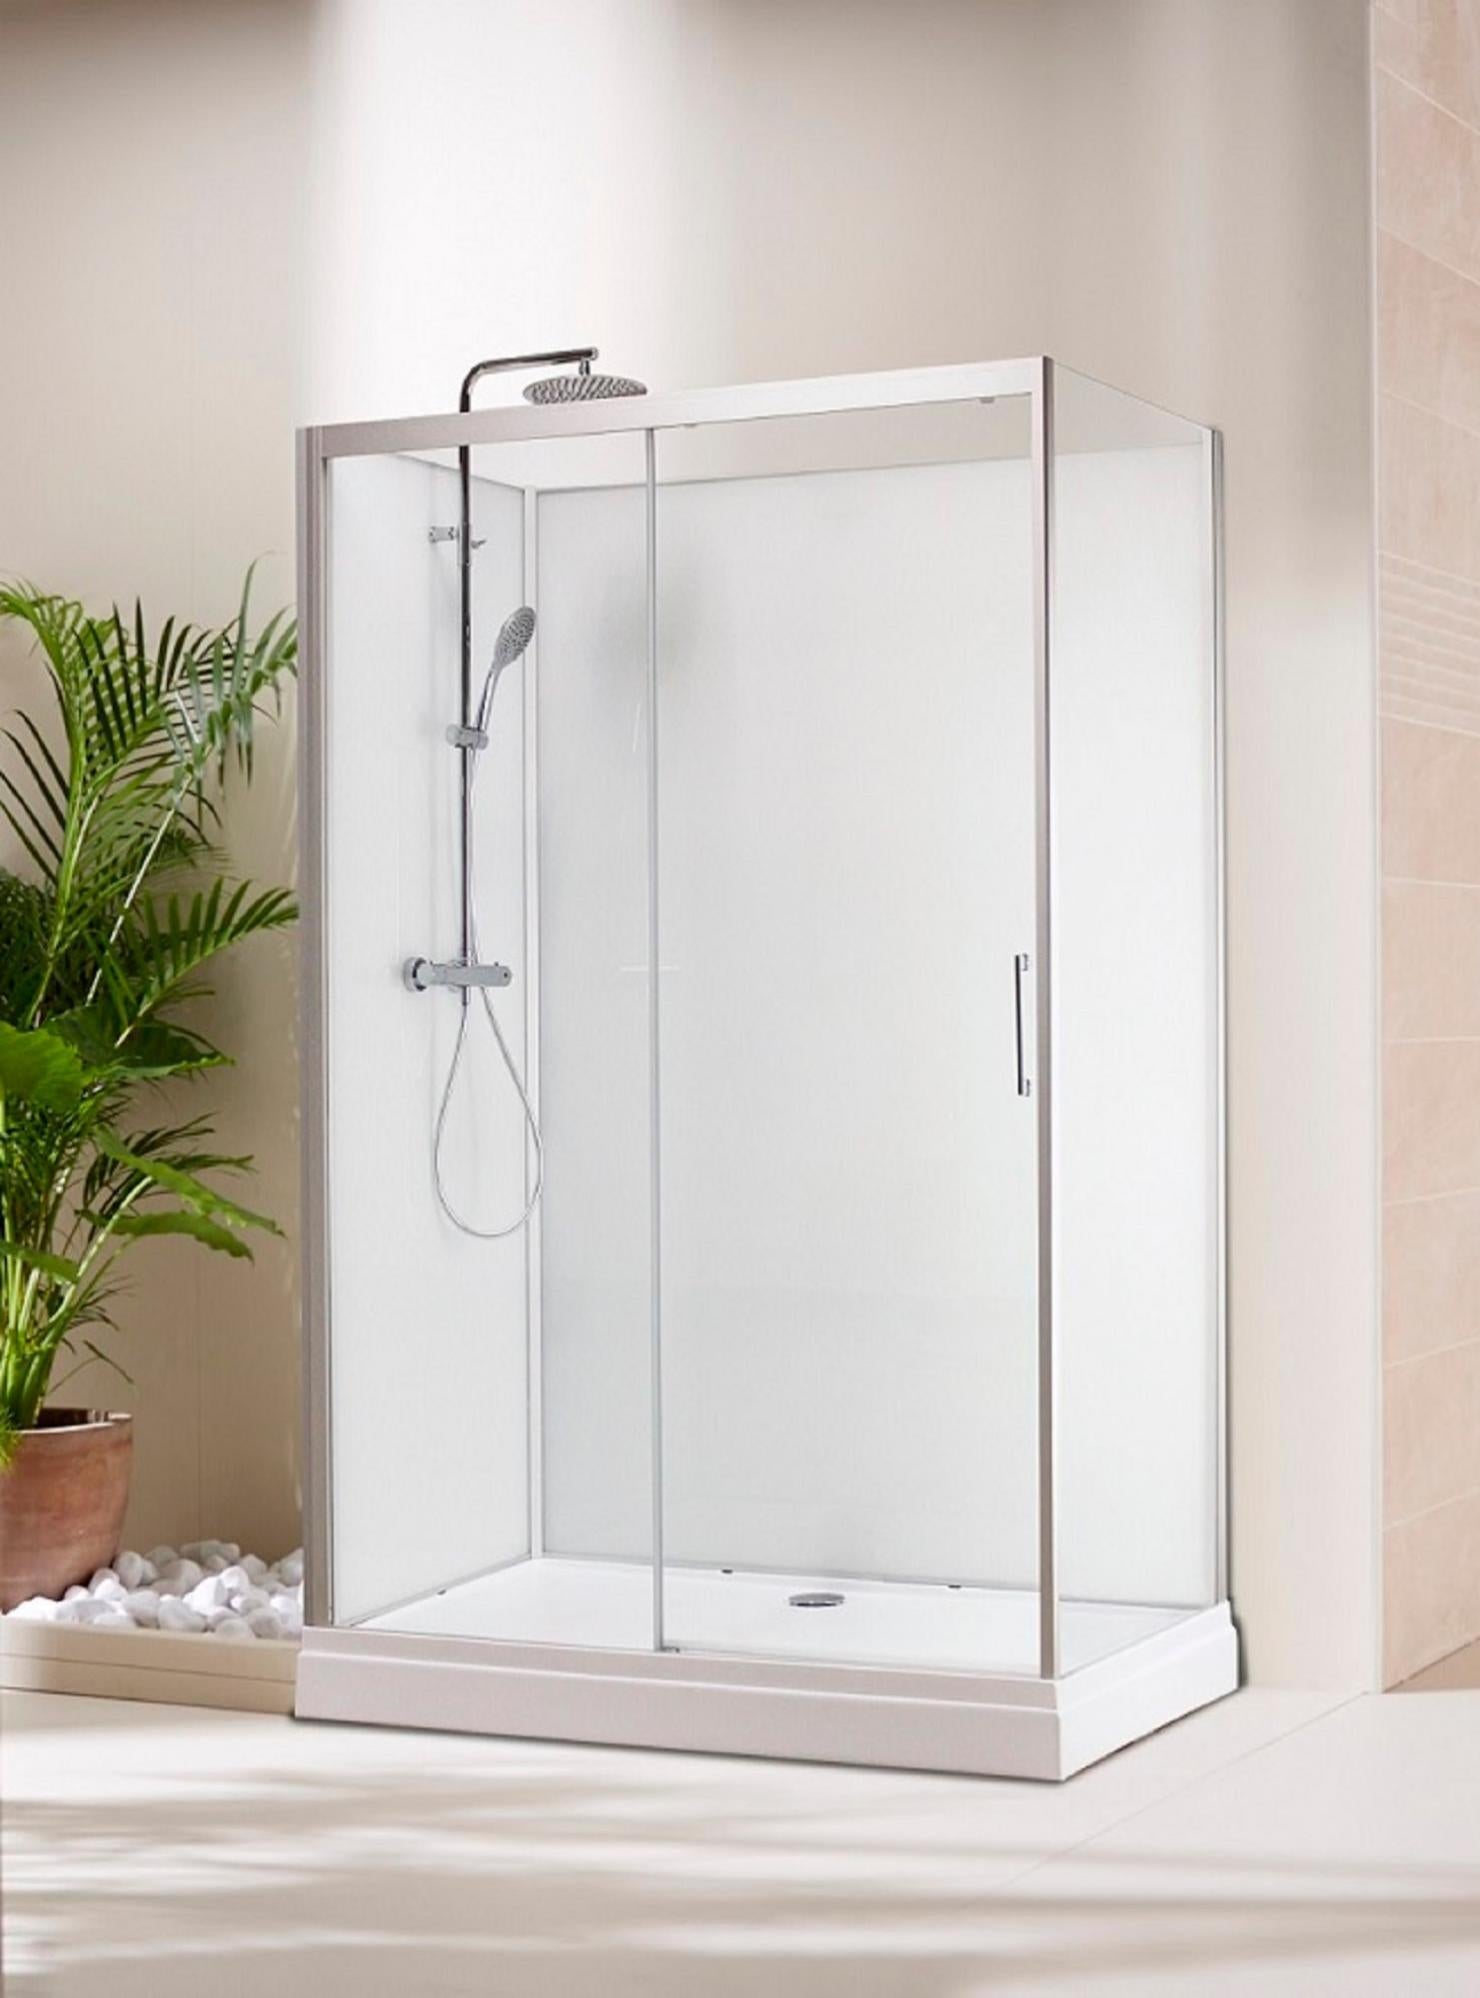 Mai & Mai cabine de douche en angle 120x90cm avec deux portes paroi de douche en verre transparent de 8mm easy clean R30K 